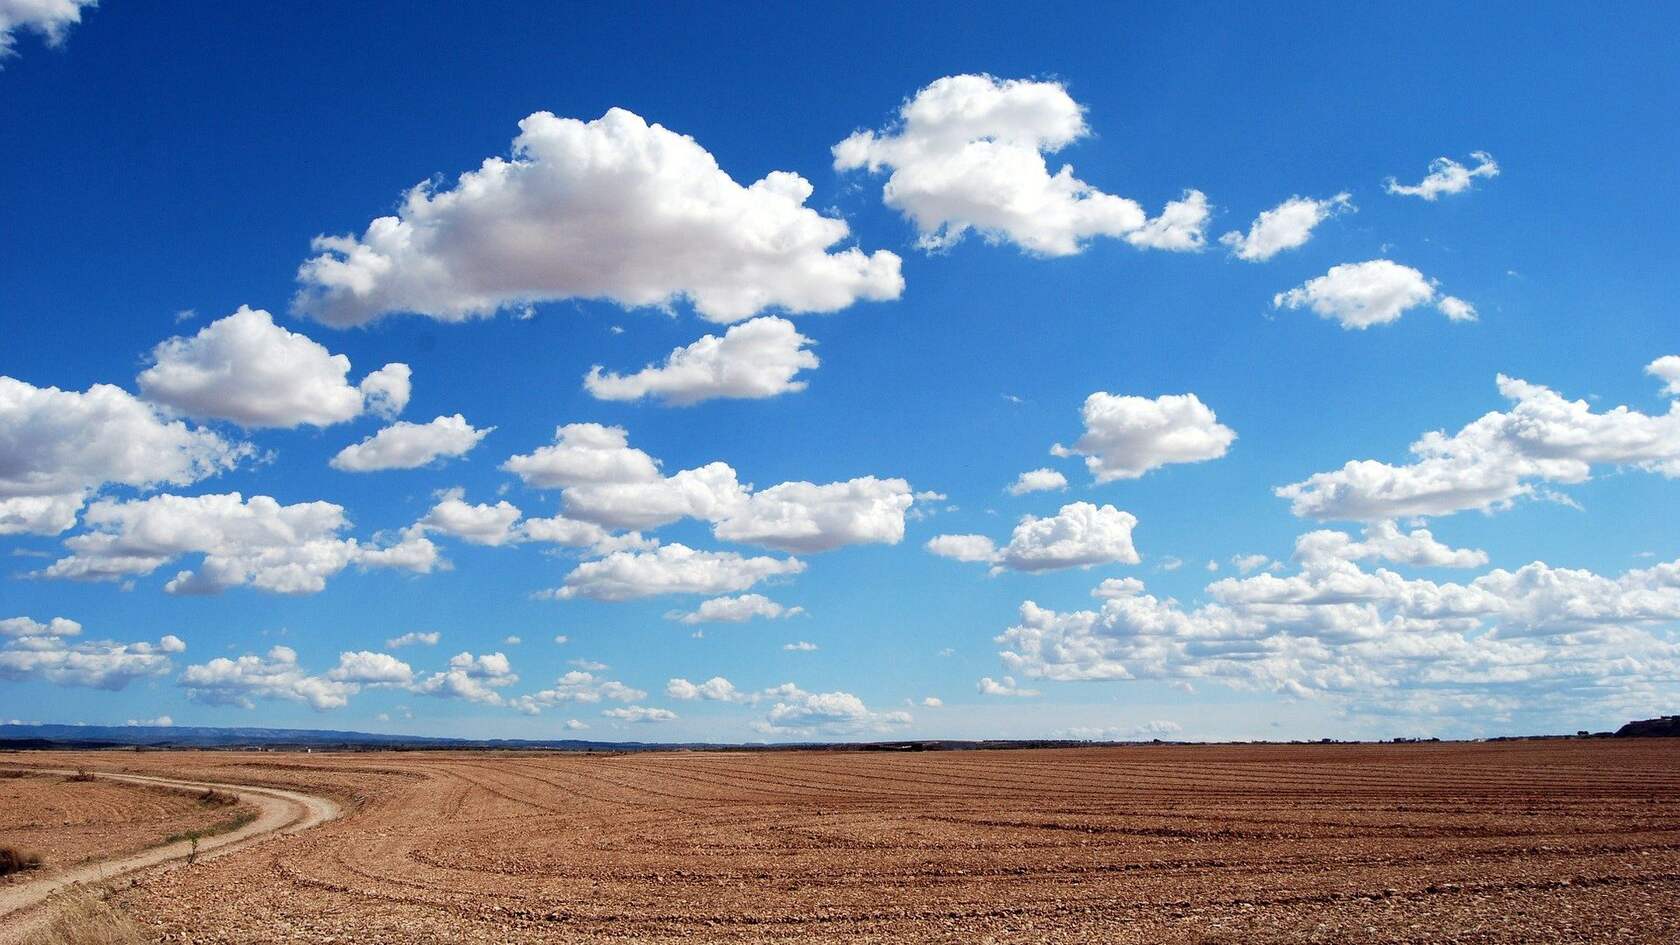 蓝天，白云，草原，田地，村庄，让人一看就心情舒畅的原野风光壁纸图片第1张图片